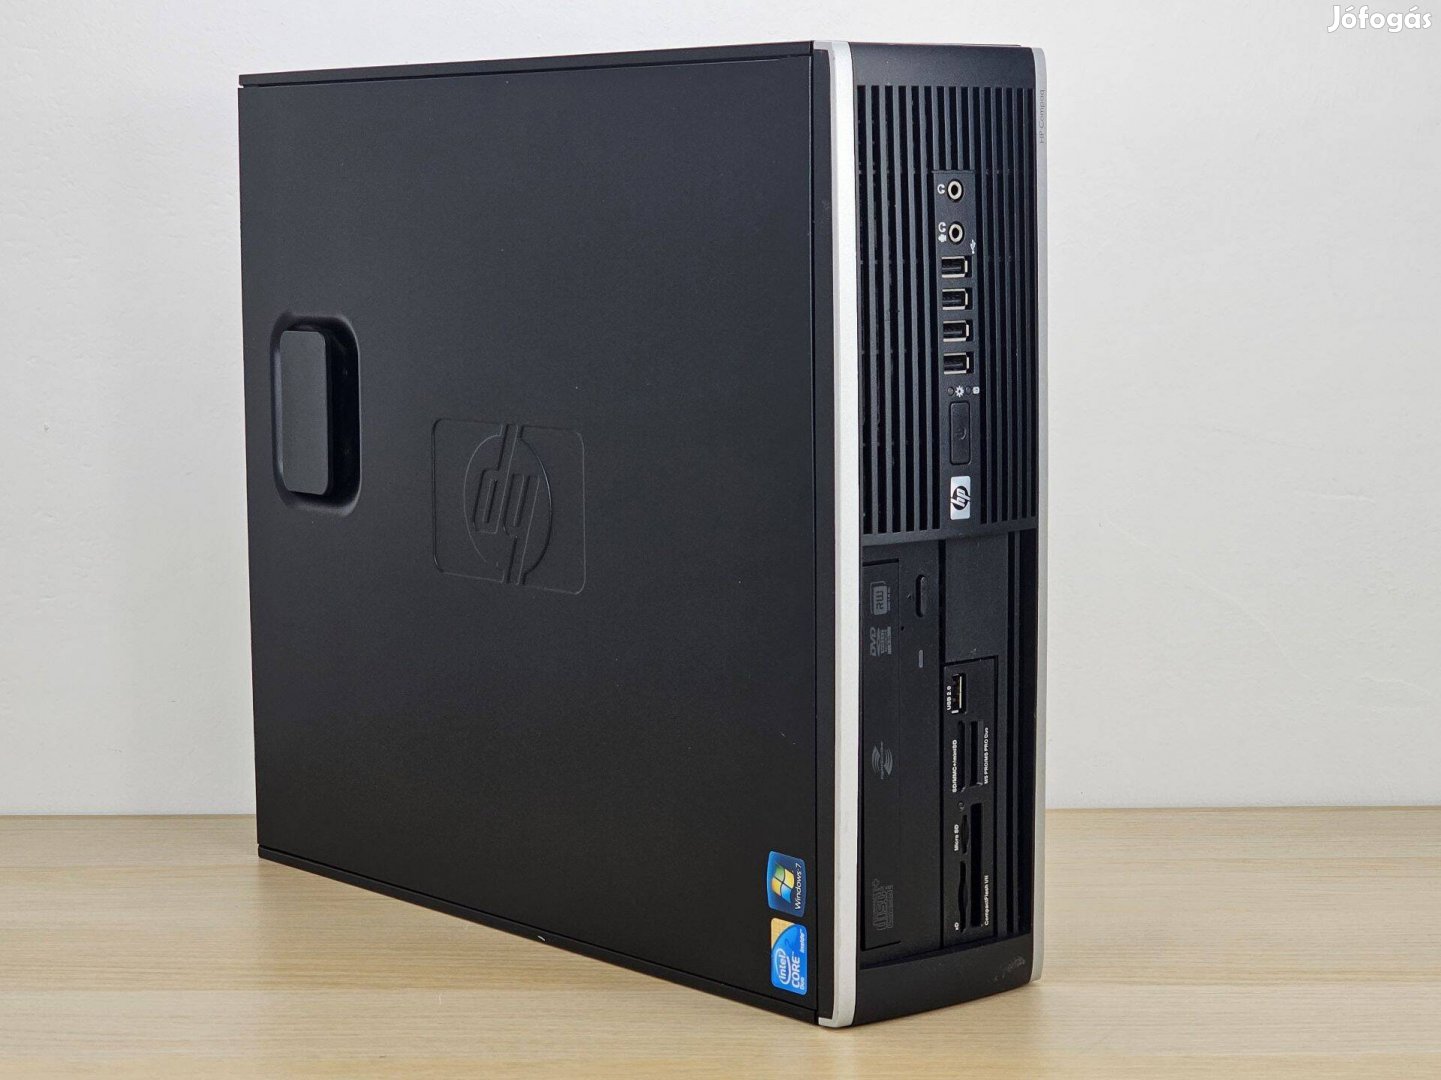 Garanciális HP Compaq 6000 Pro Sff asztali számítógép, Intel Pentium